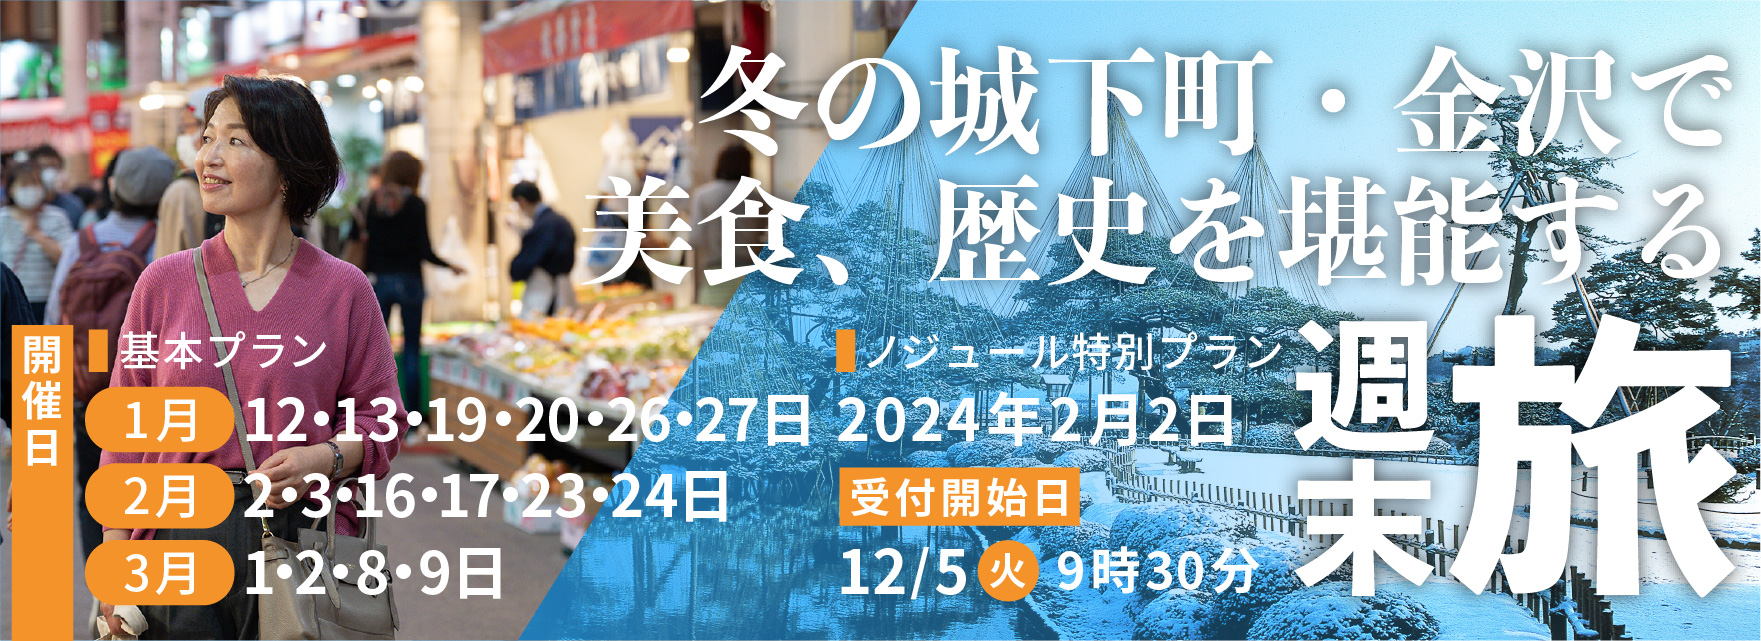 冬の城下町・金沢で美食、歴史を堪能する週末旅